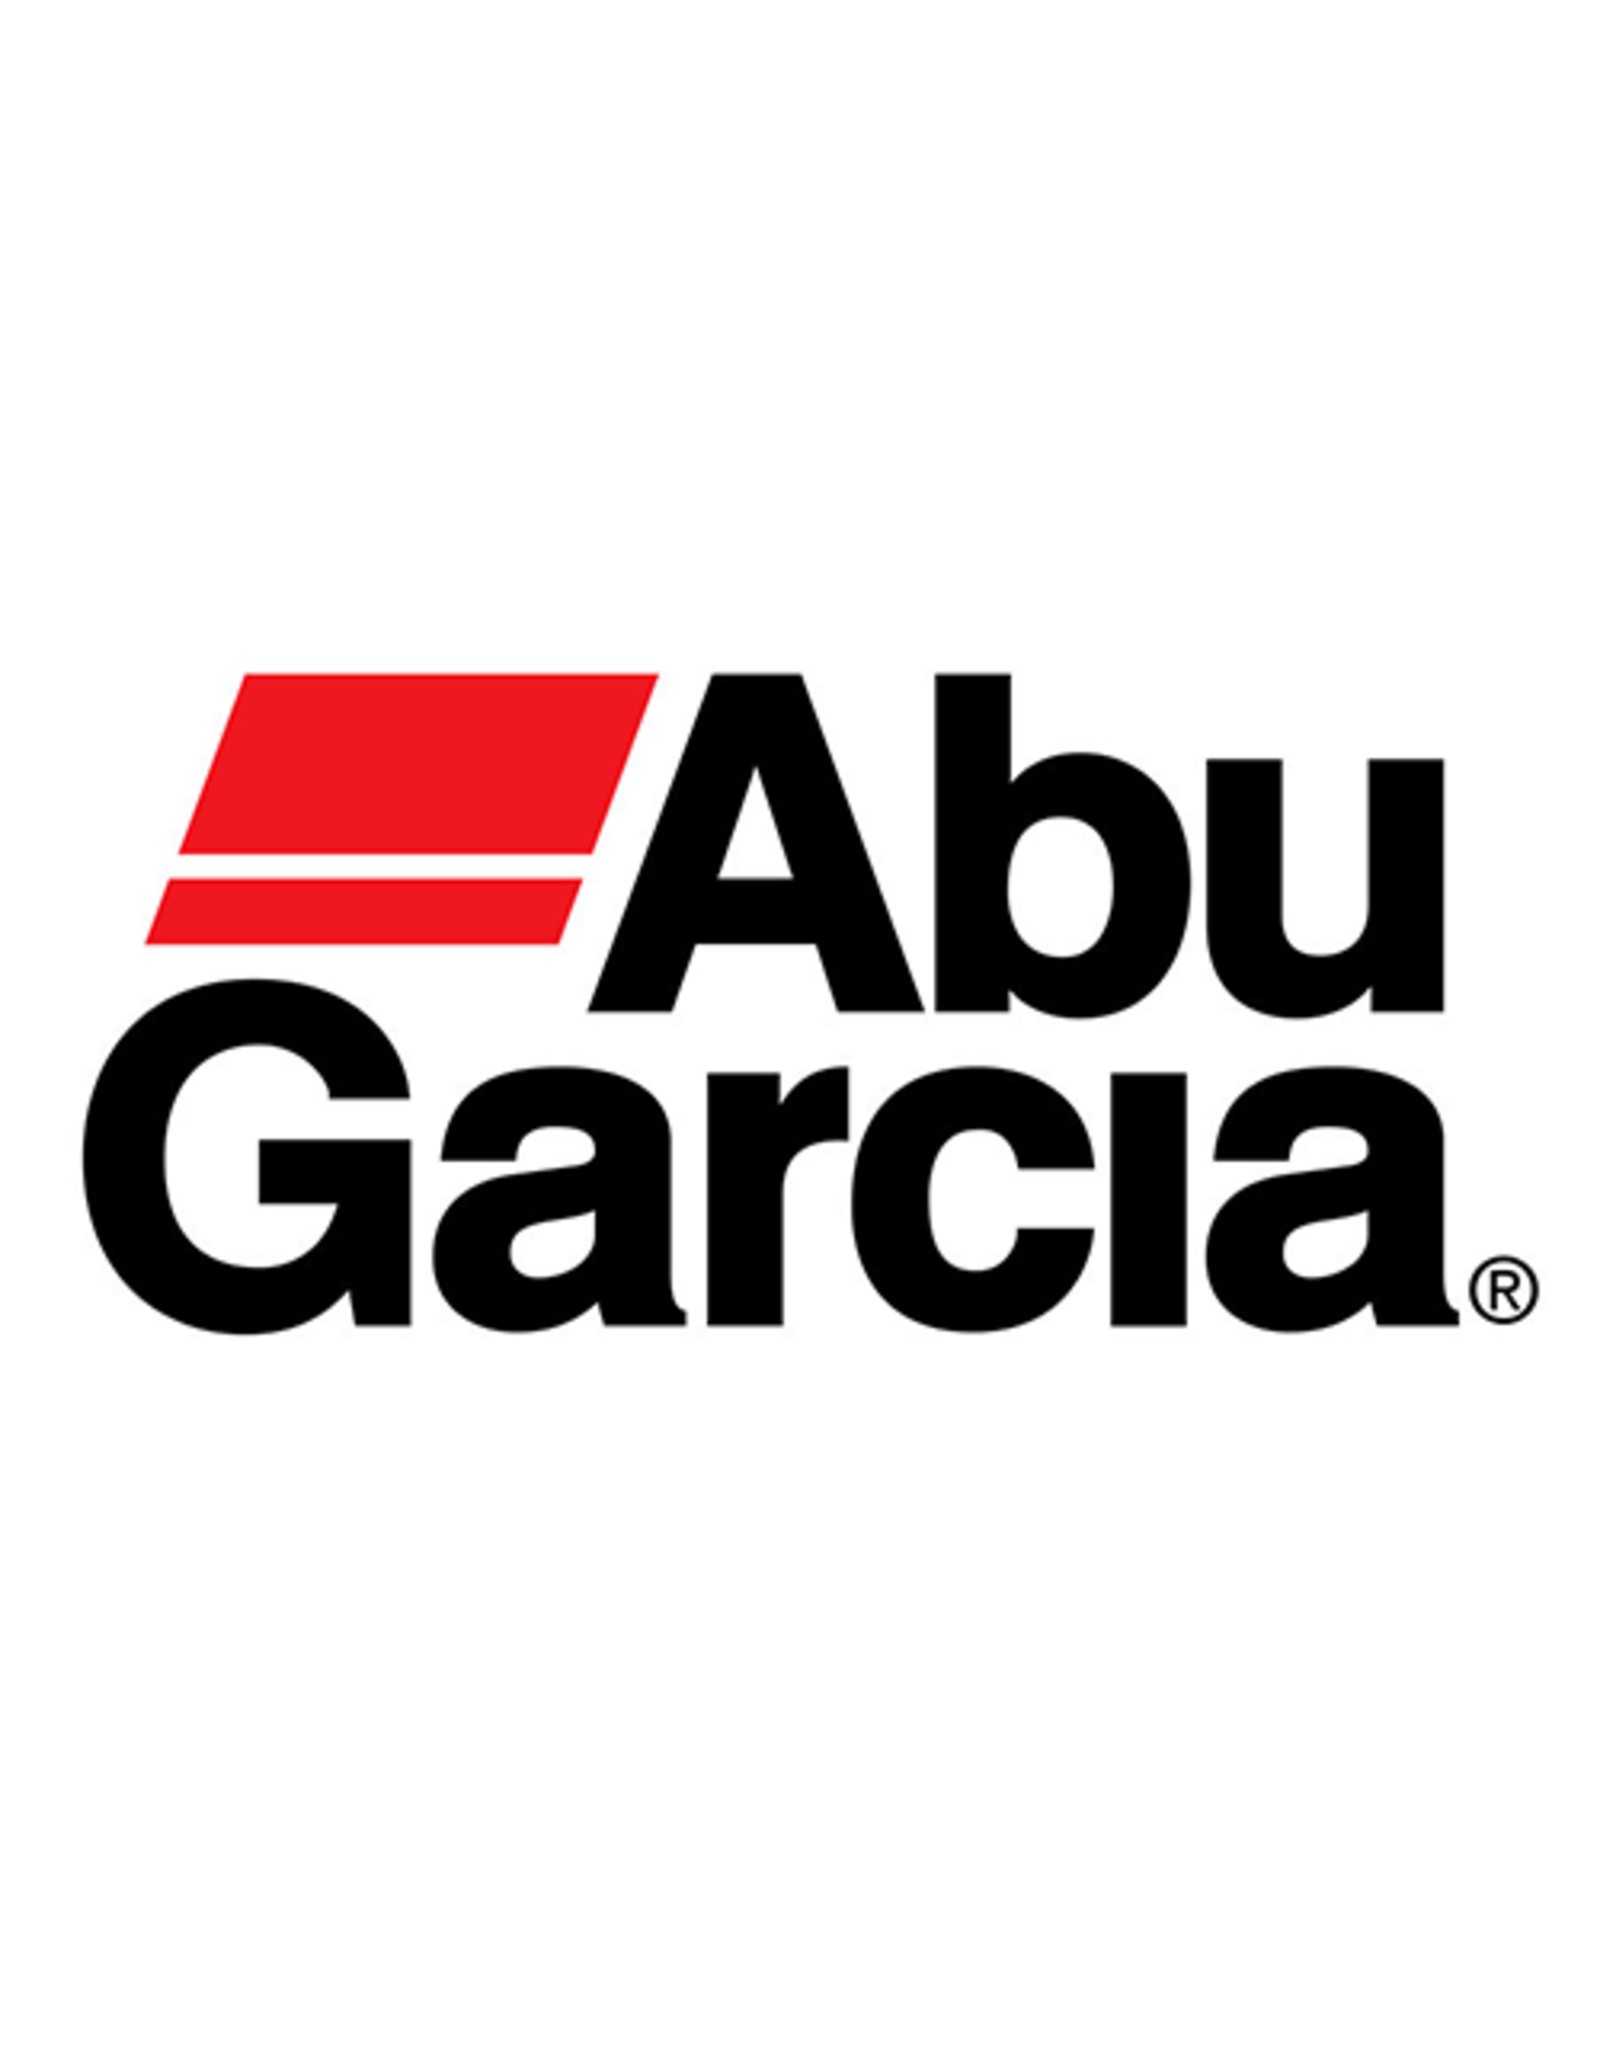 Abu Garcia 20714  STAR DRAG/NLA